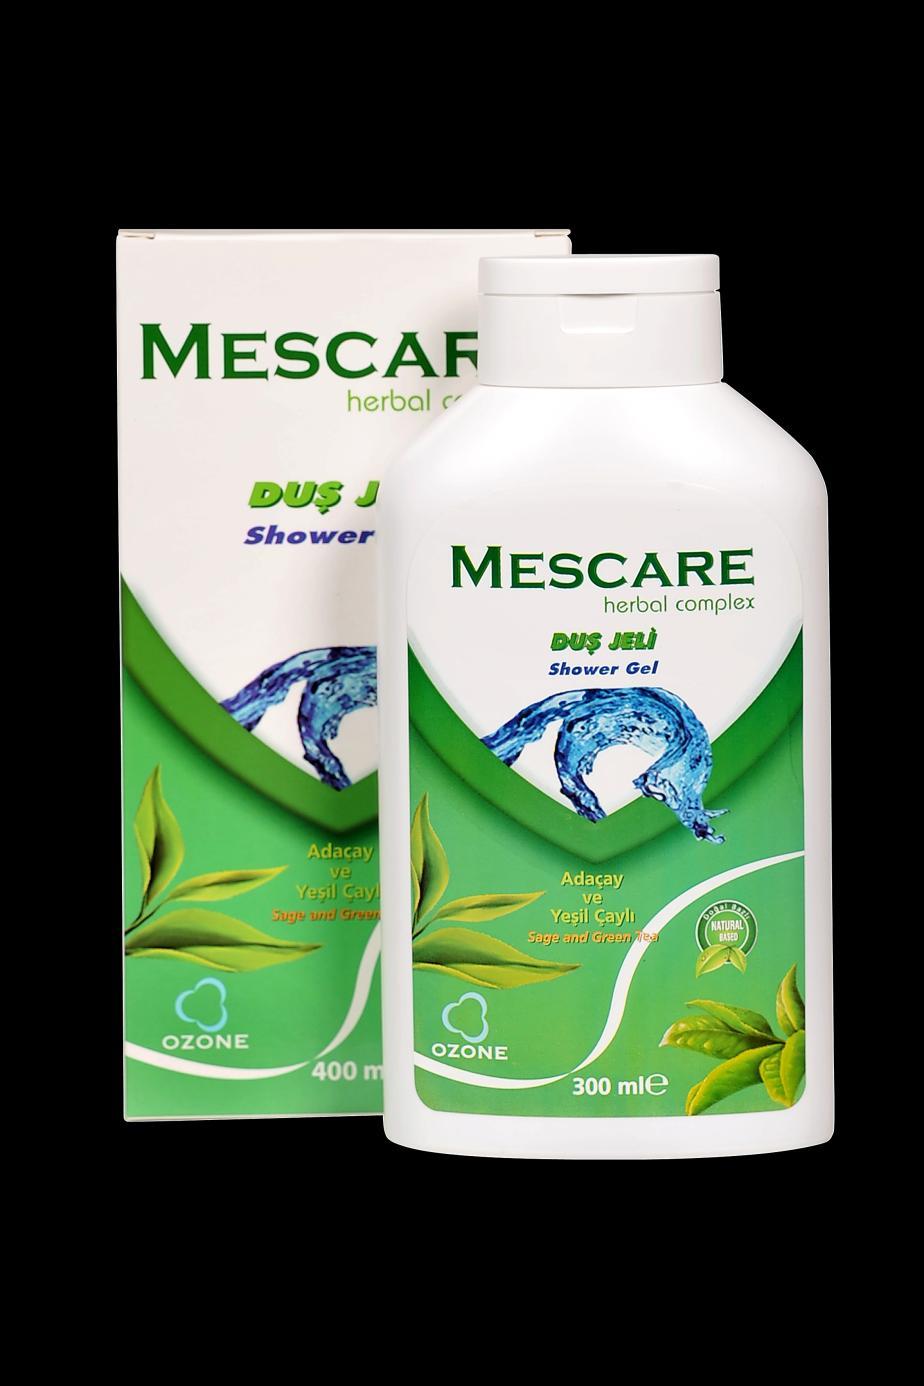 Ozonlu Duş Jeli Mescare Ozonlu Duş Jeli içerdiği Adaçayı, Yeşil Çay, Ozonlanmış Saf Zeytinyağı, Hindistan Cevizi ve Coco Ağacından elde edilen doğal yağlar ile formüle edilmiş özel bir üründür.